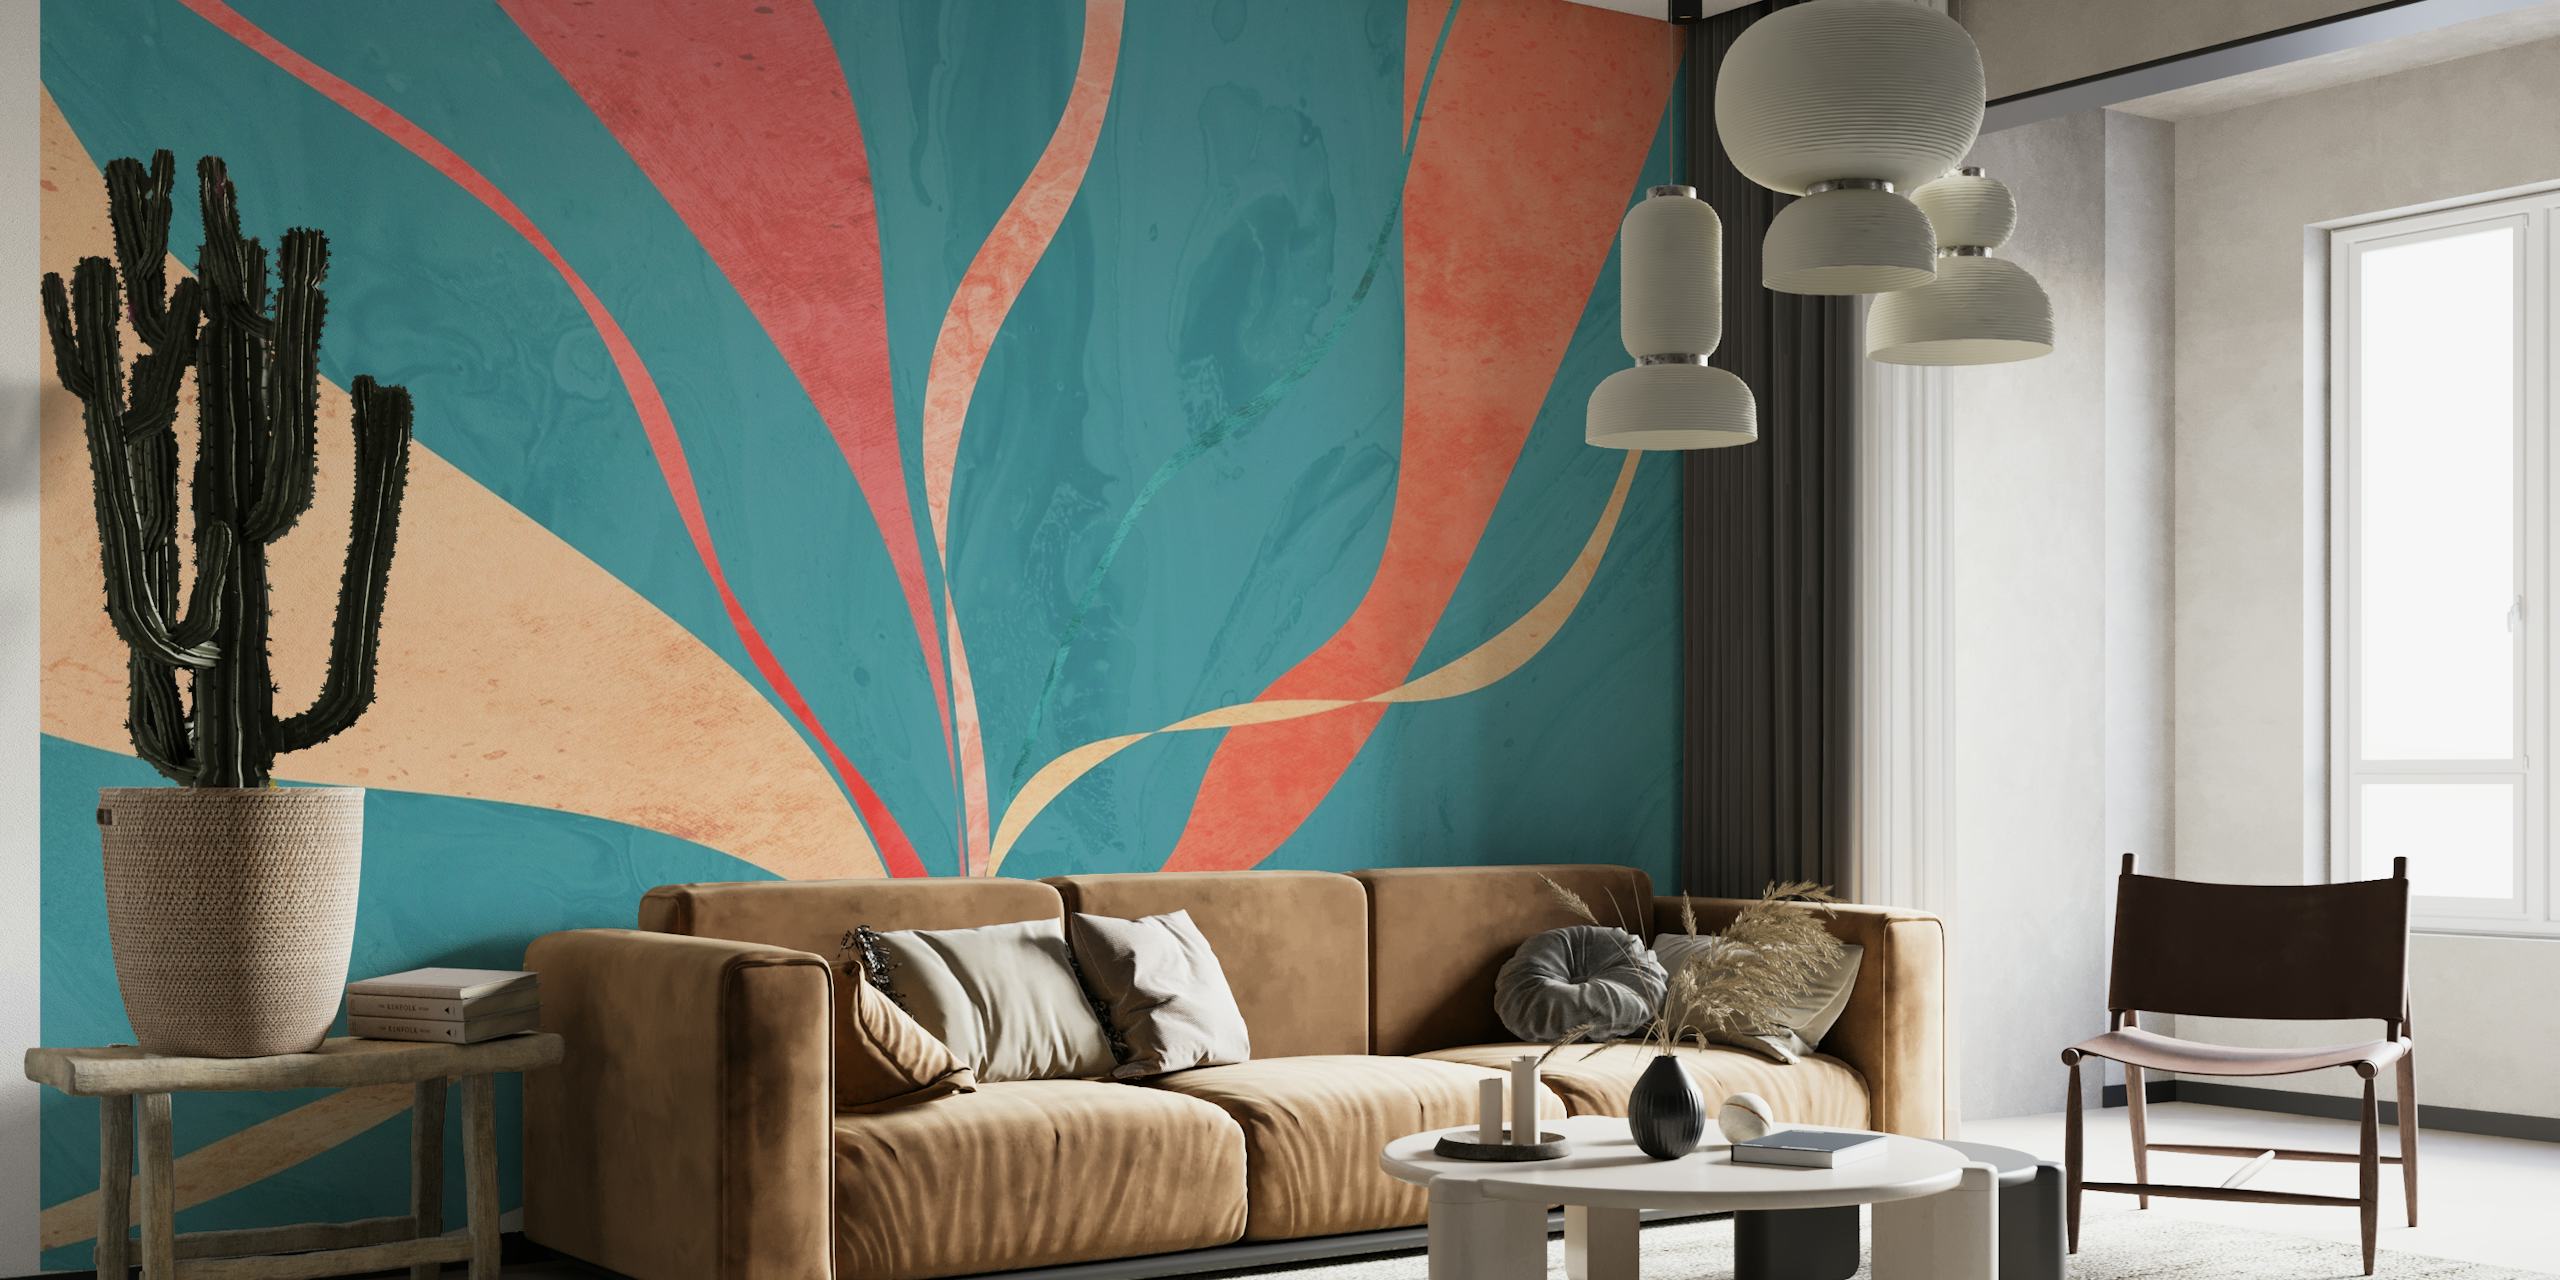 Apstraktni zidni mural s tekućim linijama u nijansama plavozelene, koraljne i bež boje